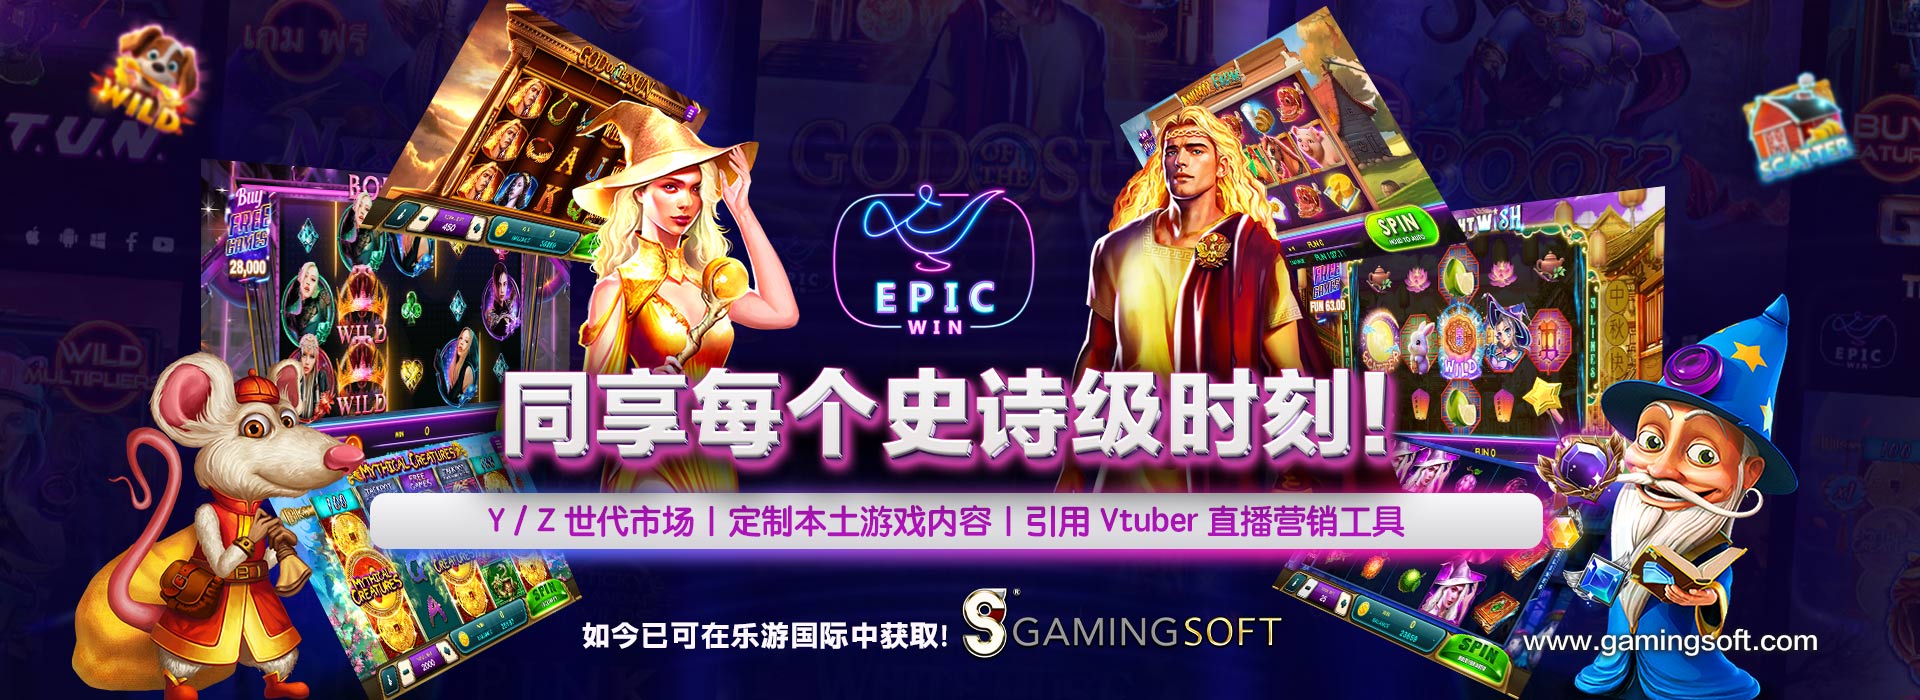 EPIC WIN 同享每个史诗级时刻  网页横幅 - 乐游国际GamingSoft